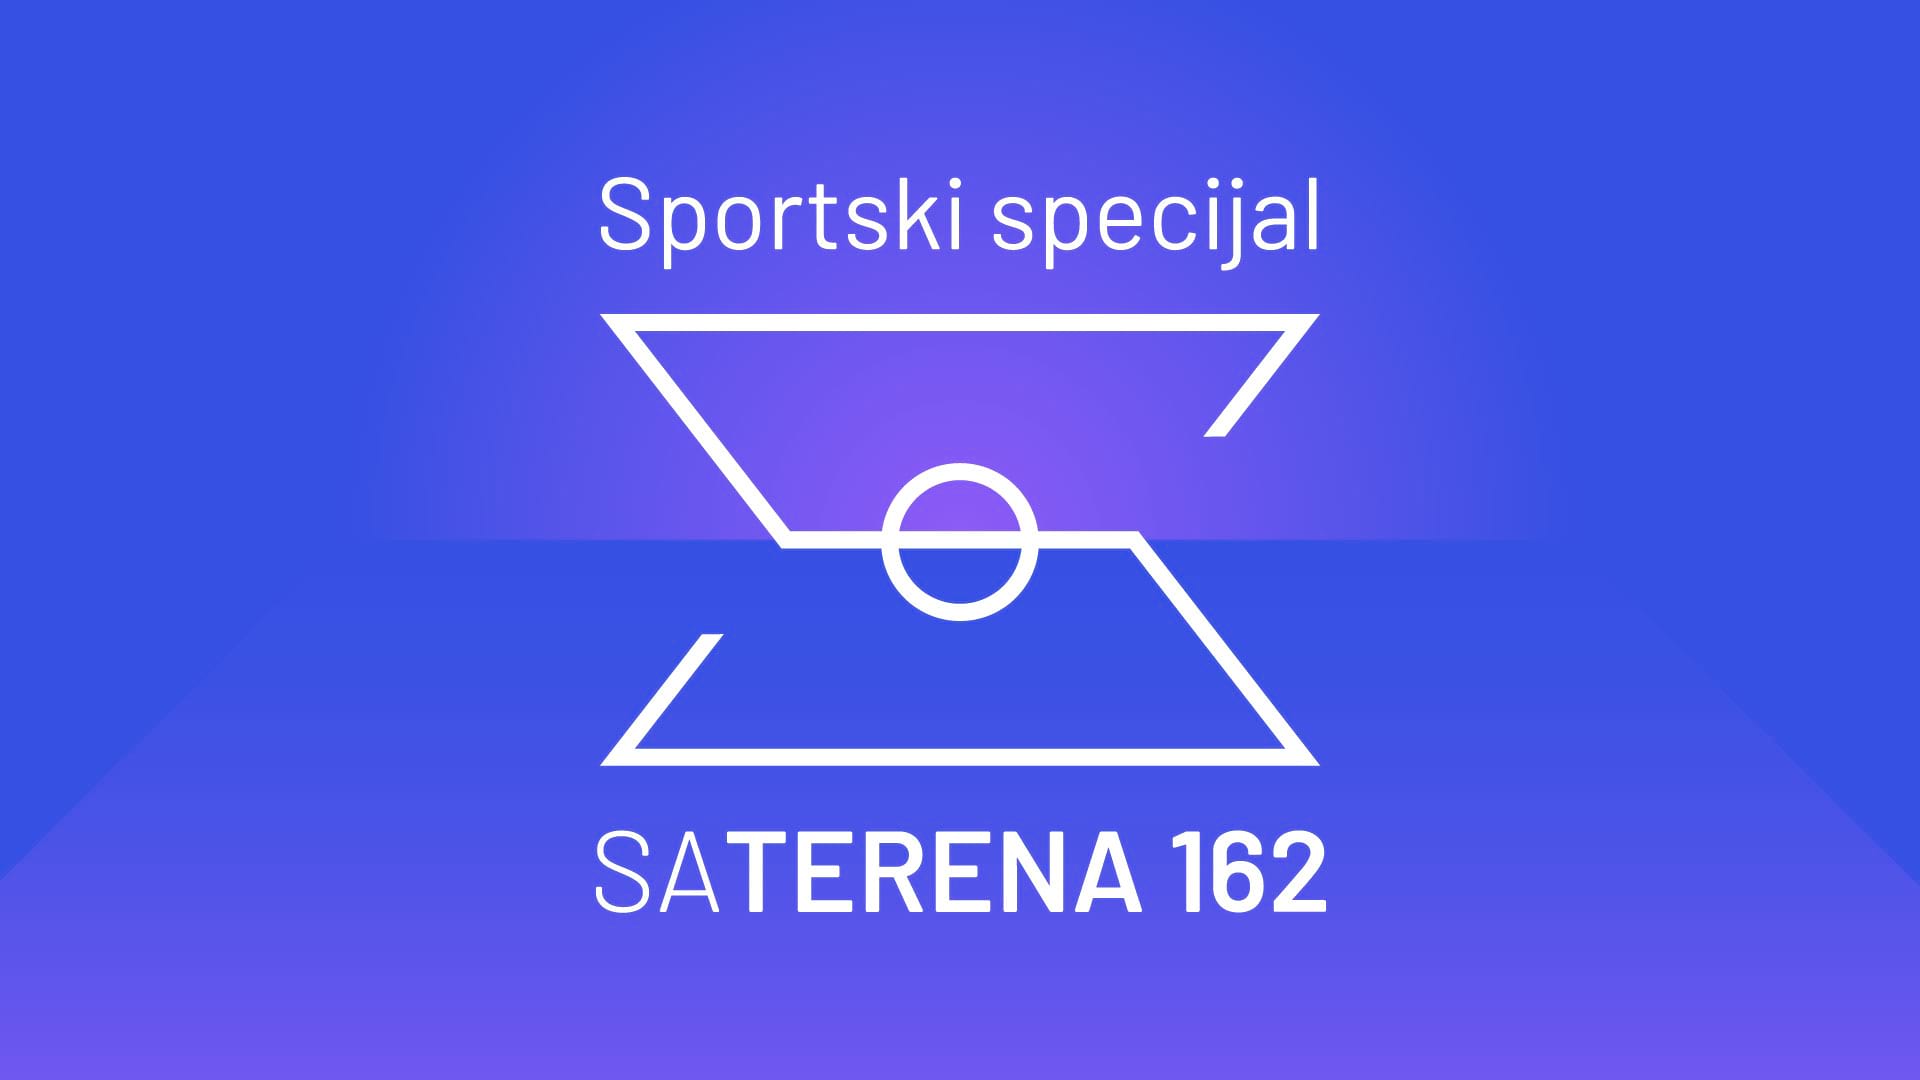 Sa terena 162: Sportski specijal